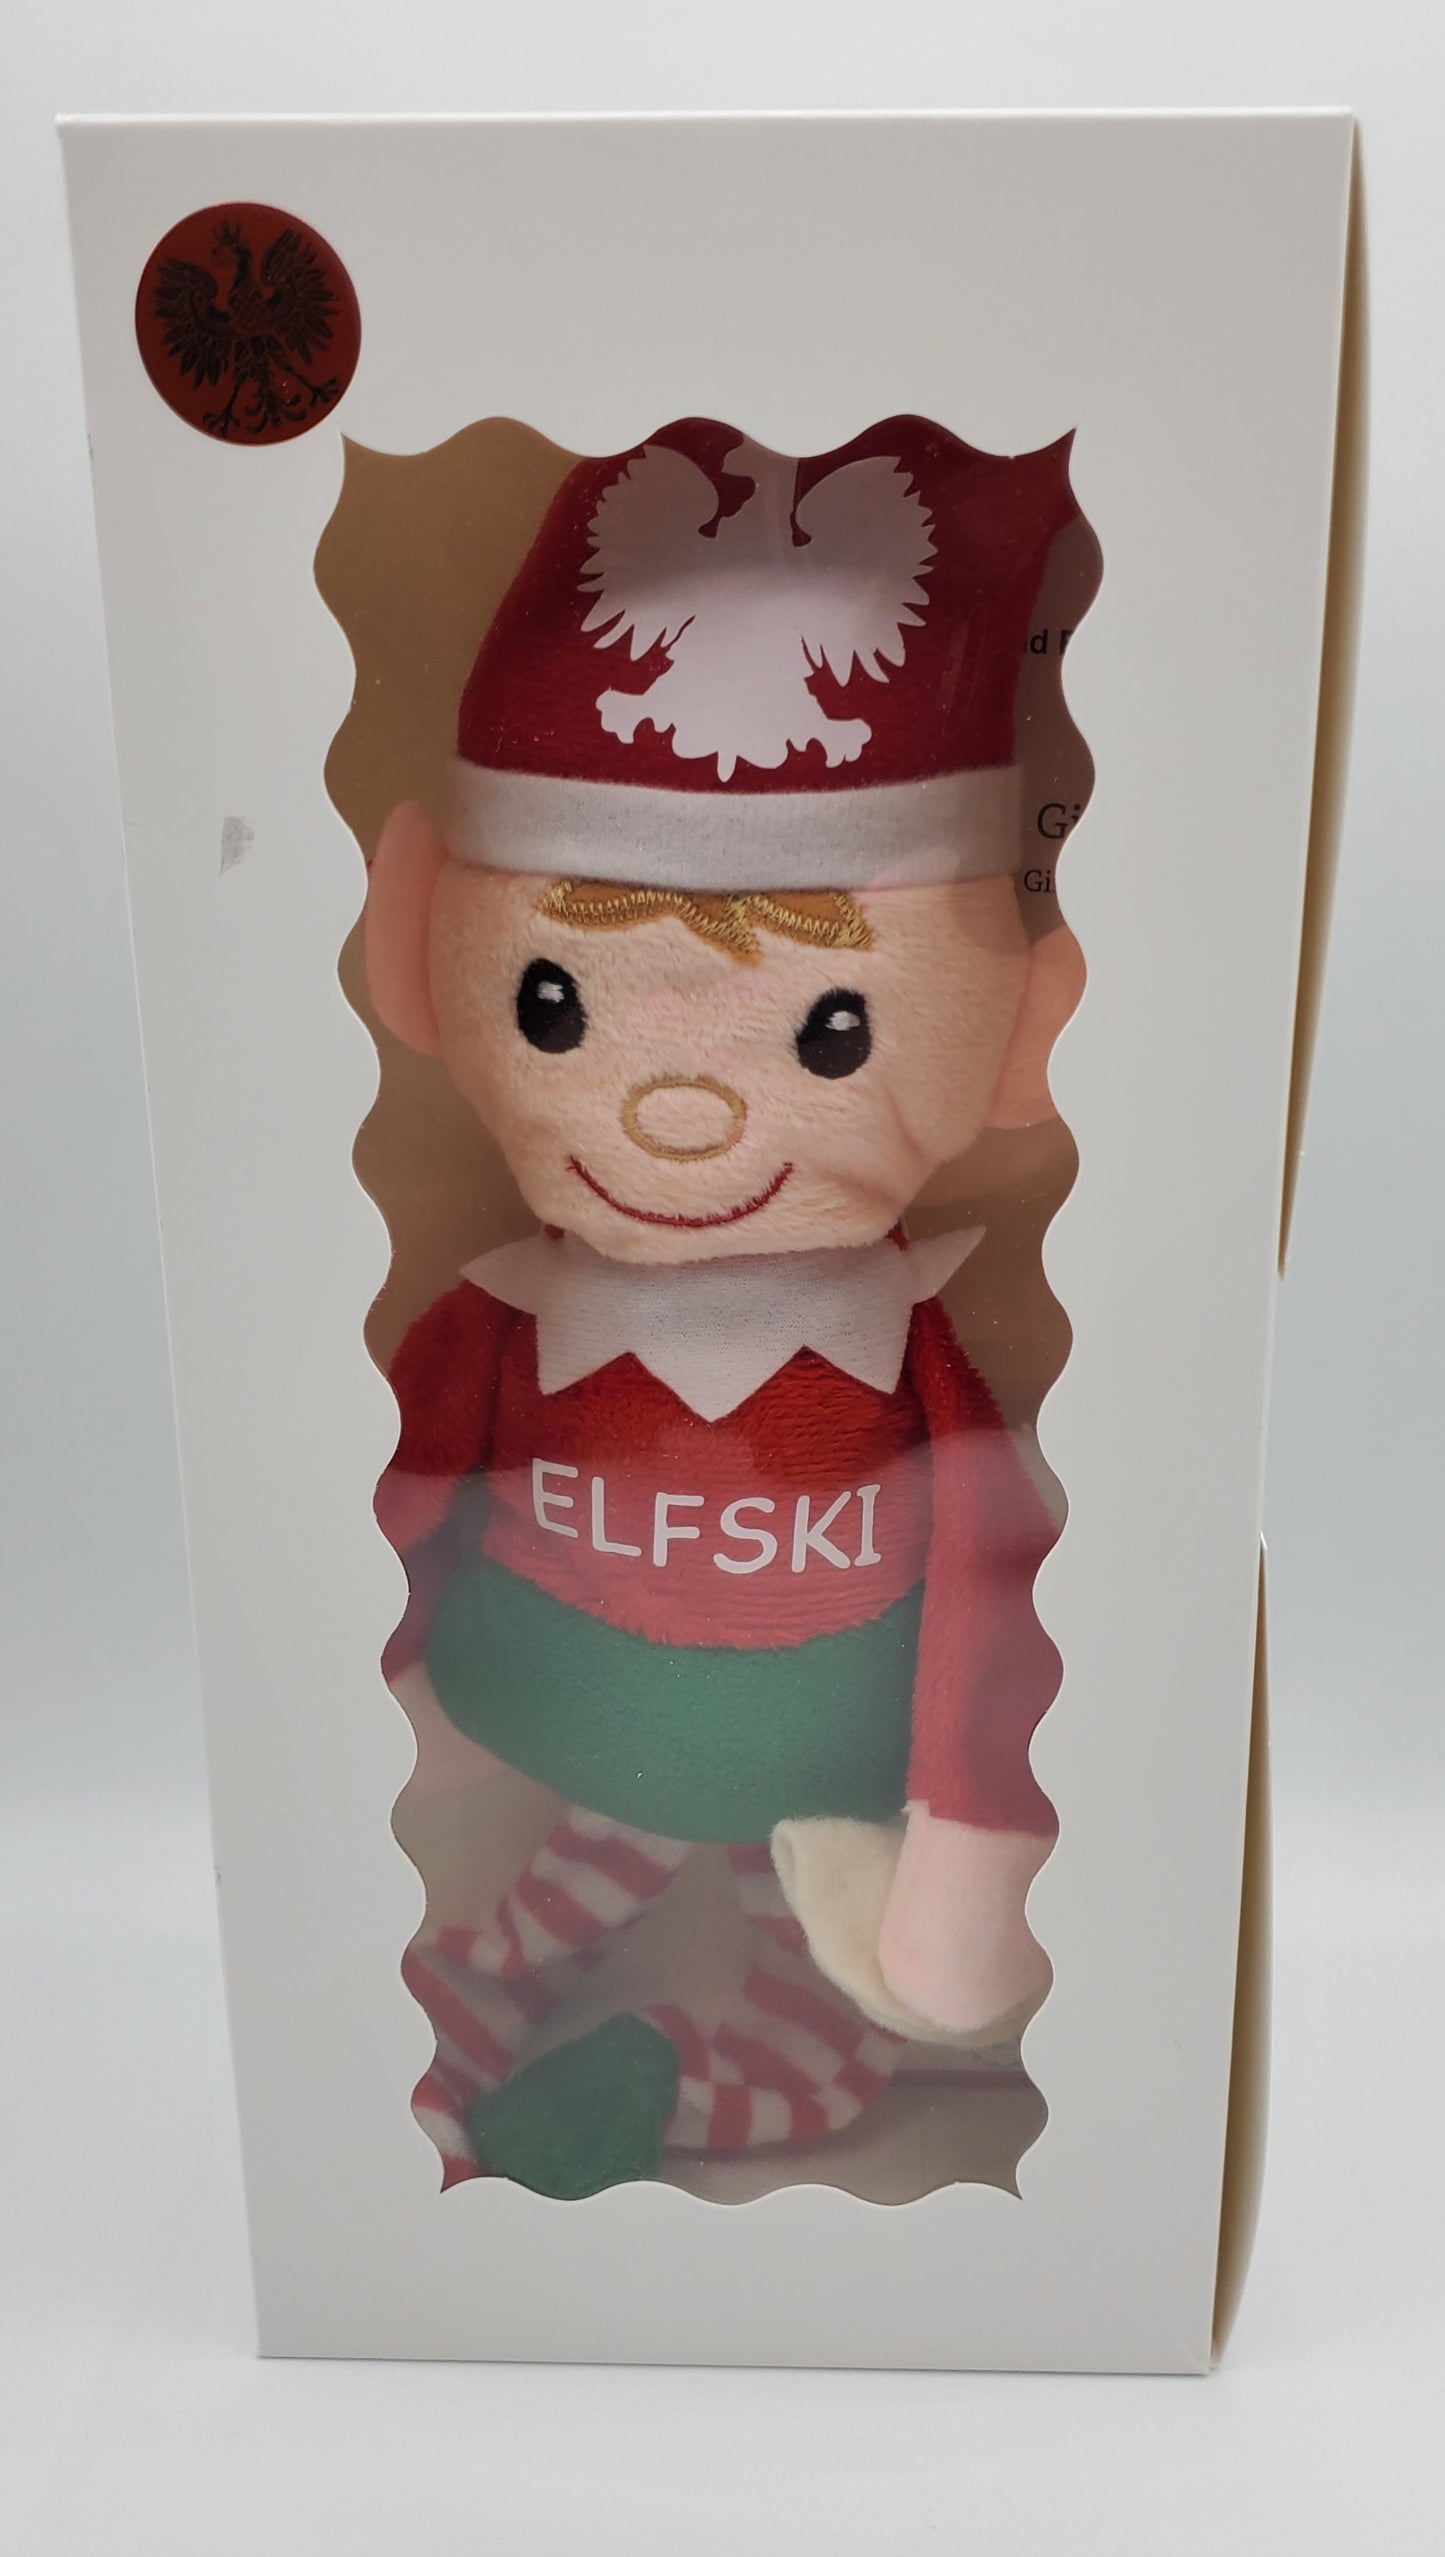 Elfski in box